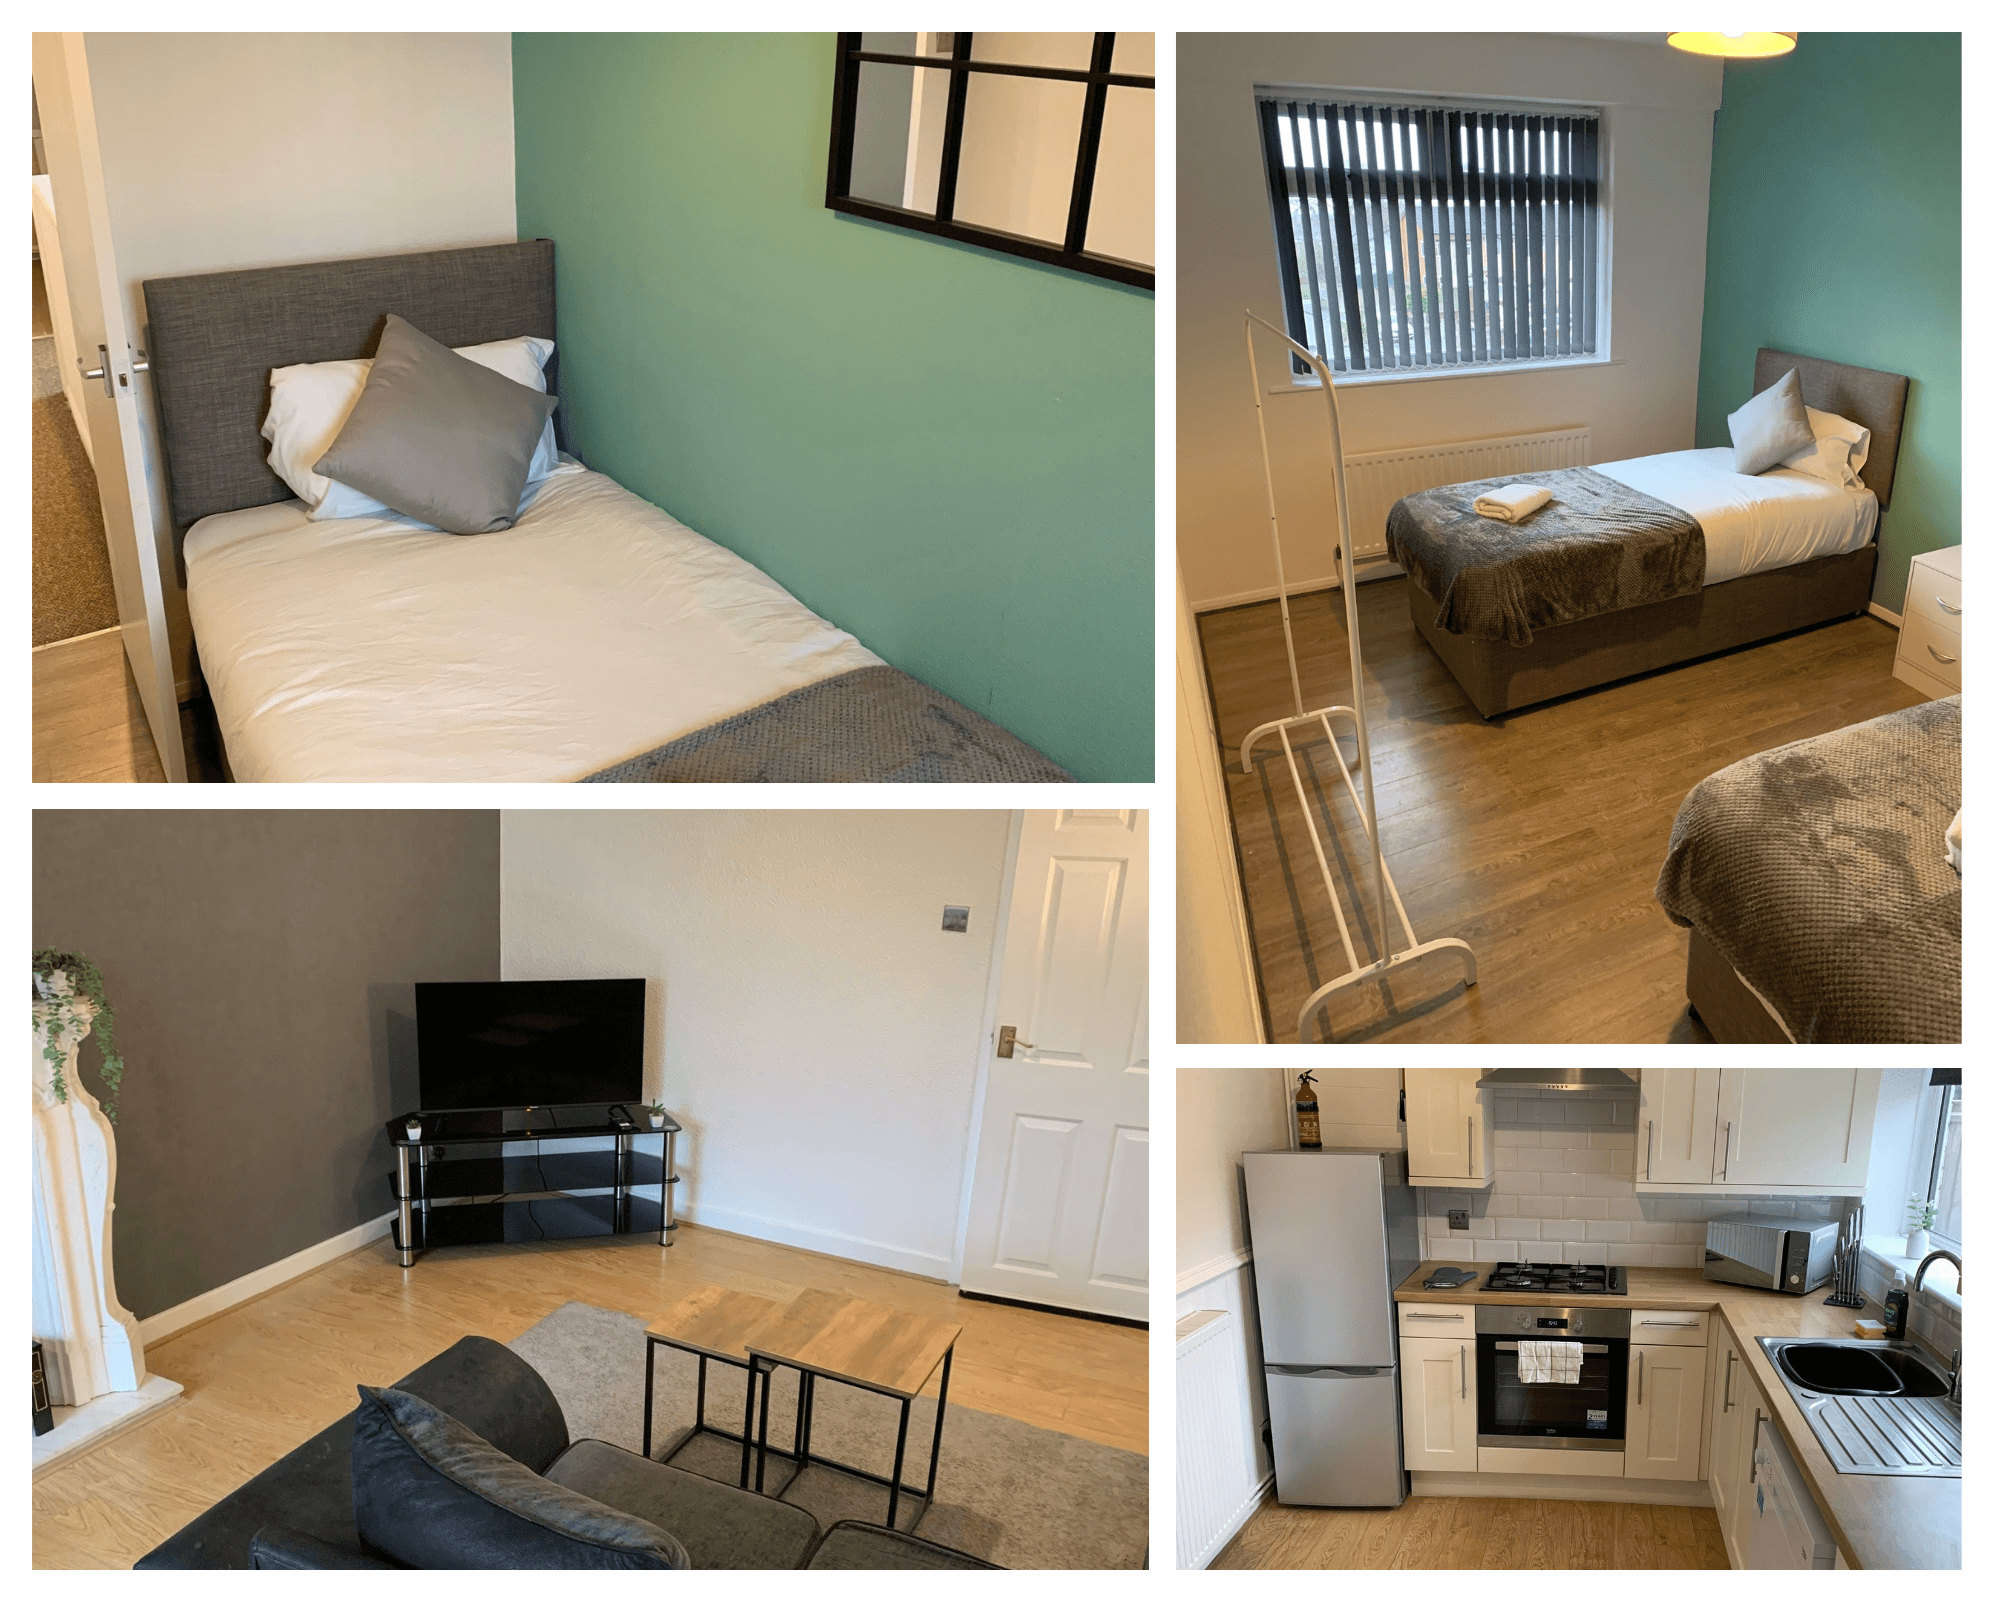 Furnished Accommodation Ltd - 3 Bed house near Etihad Stadium